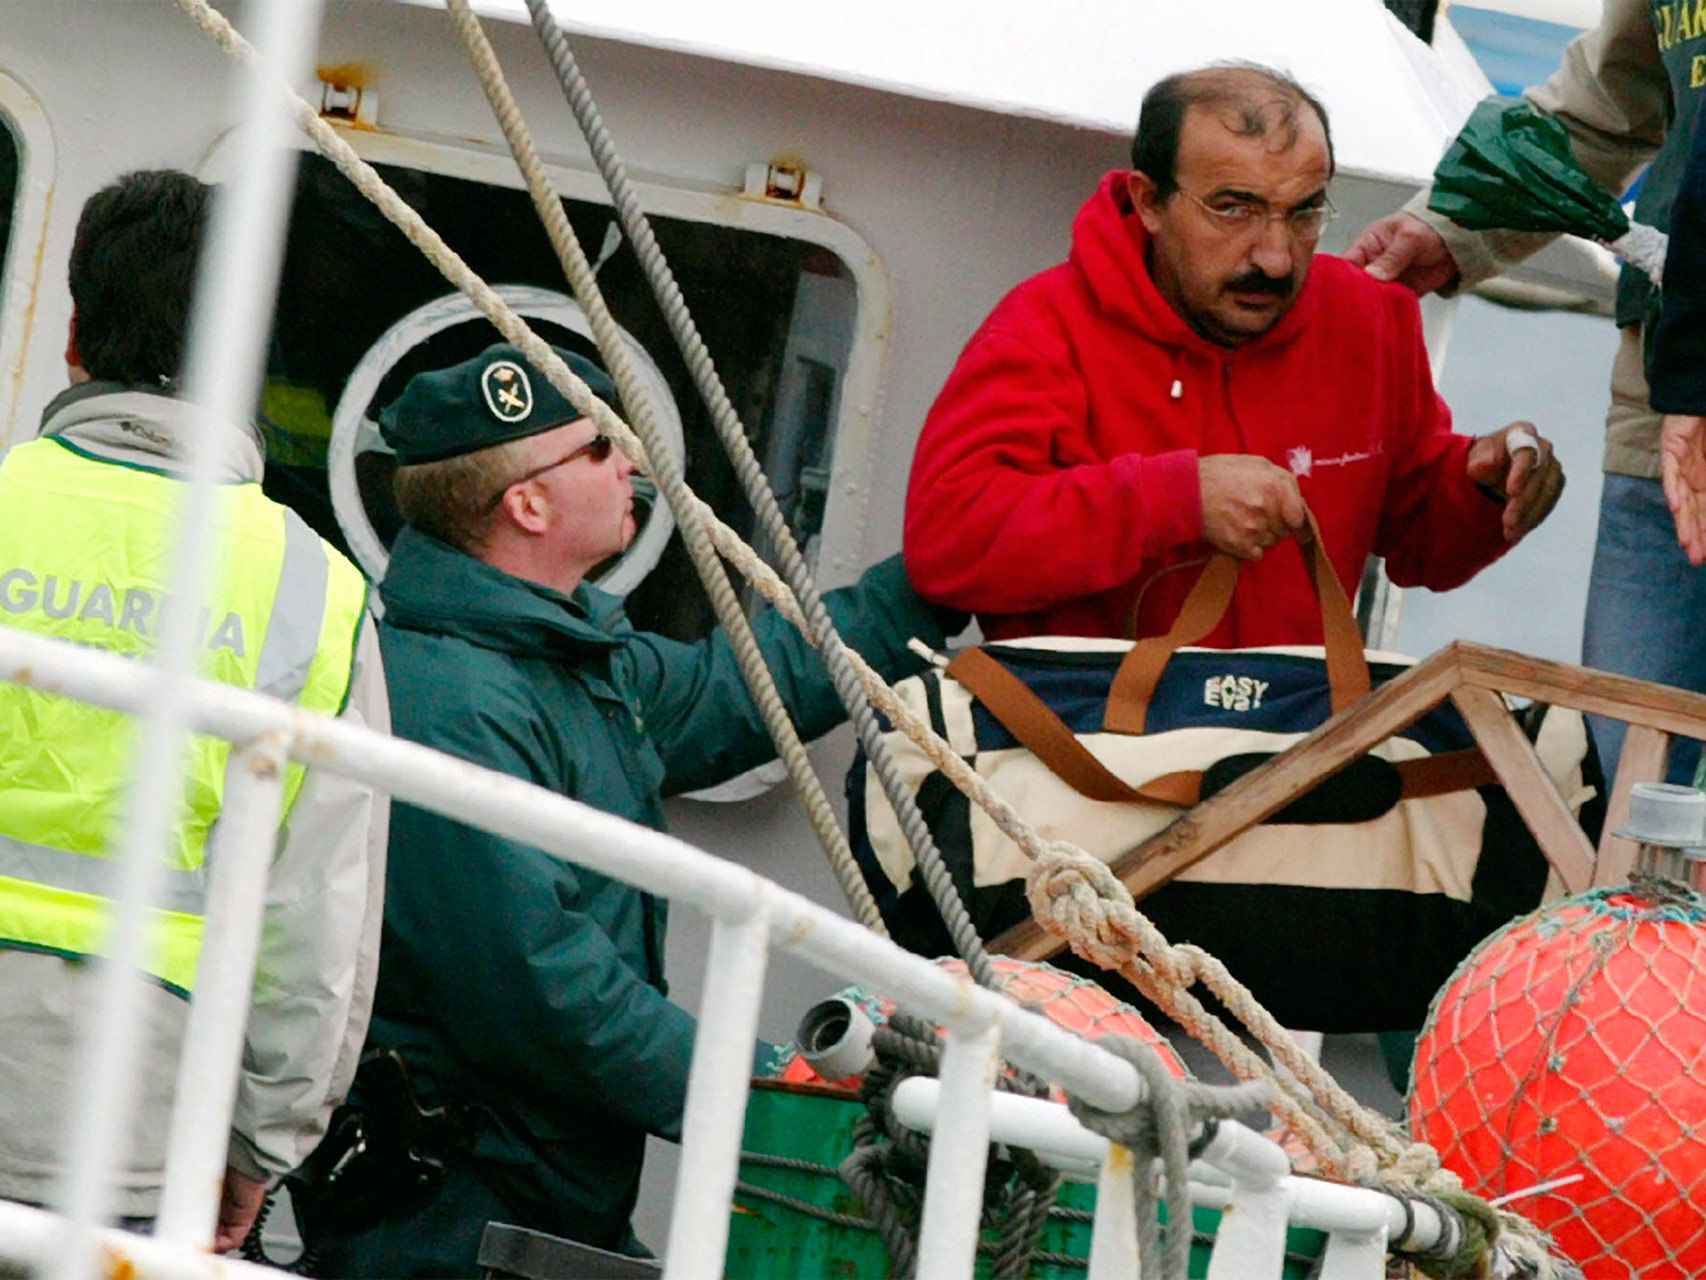 Alberto Martinez Gonzalez, propietario del barco Nuevo Salmon, es arrestado en marzo de 2006 por un alijo de cocaína.